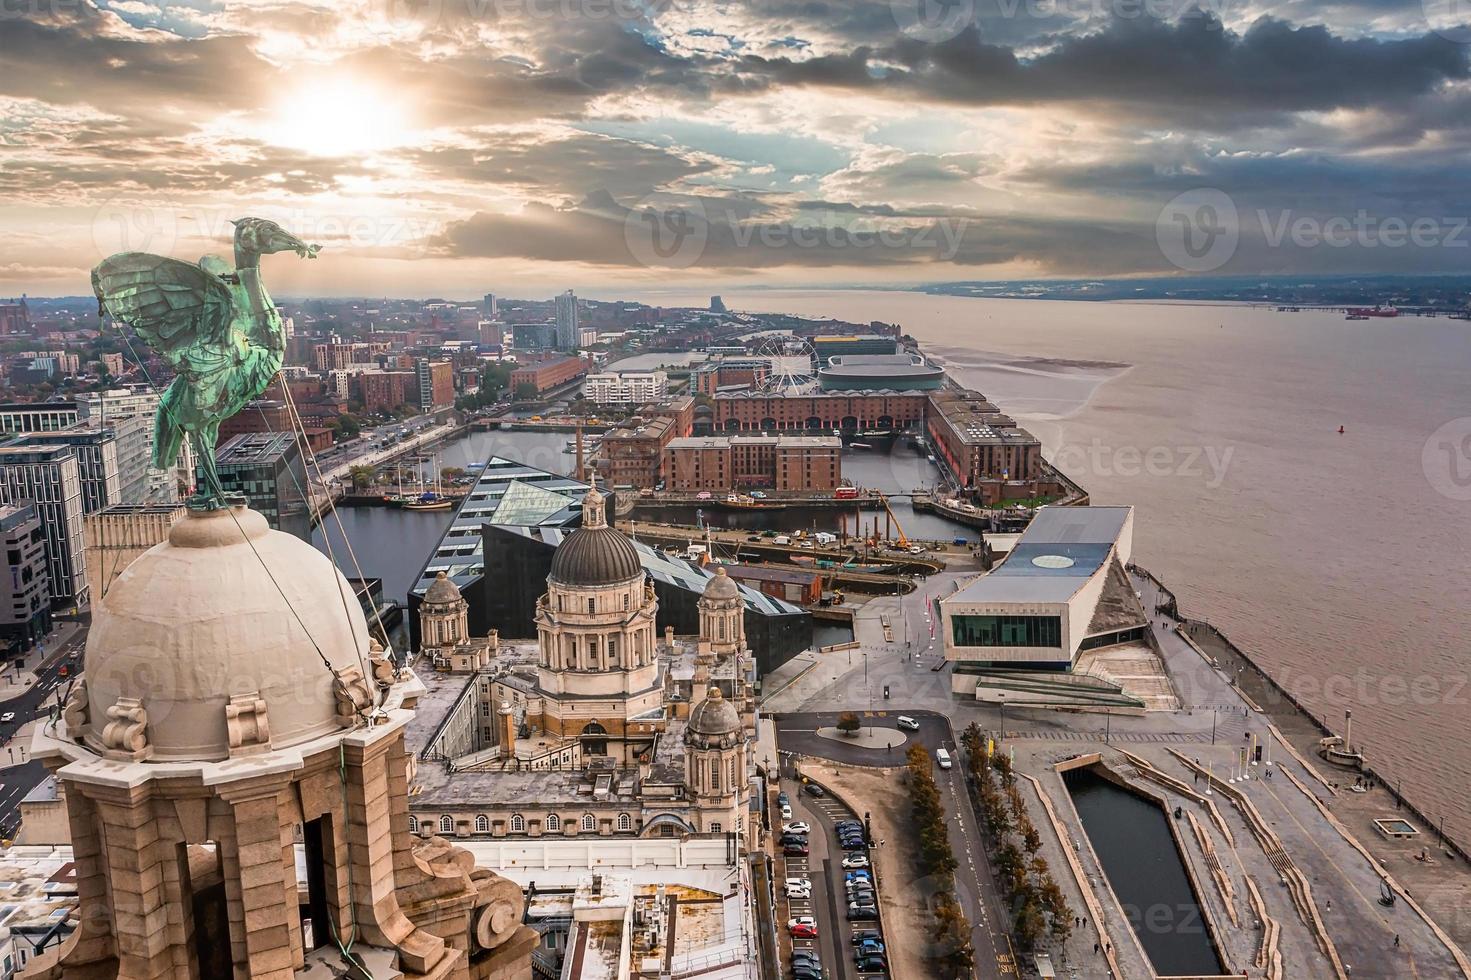 close-up aéreo da torre do edifício do fígado real em Liverpool foto